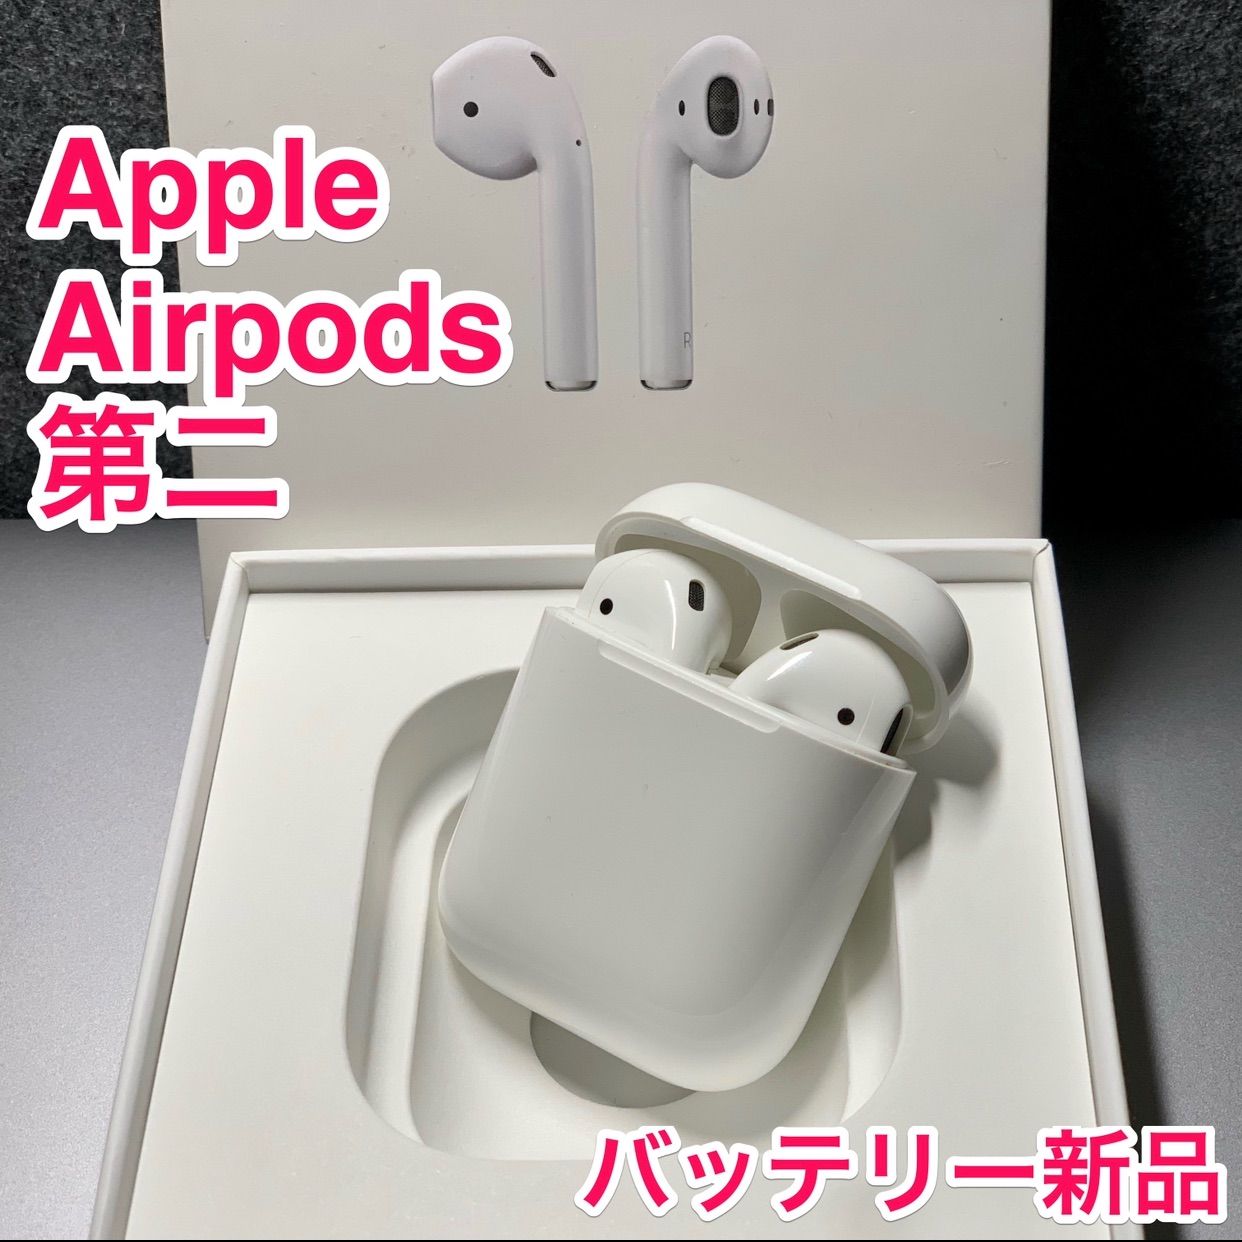 【日本直送】新品 Apple AirPods 第2世代 イヤホン